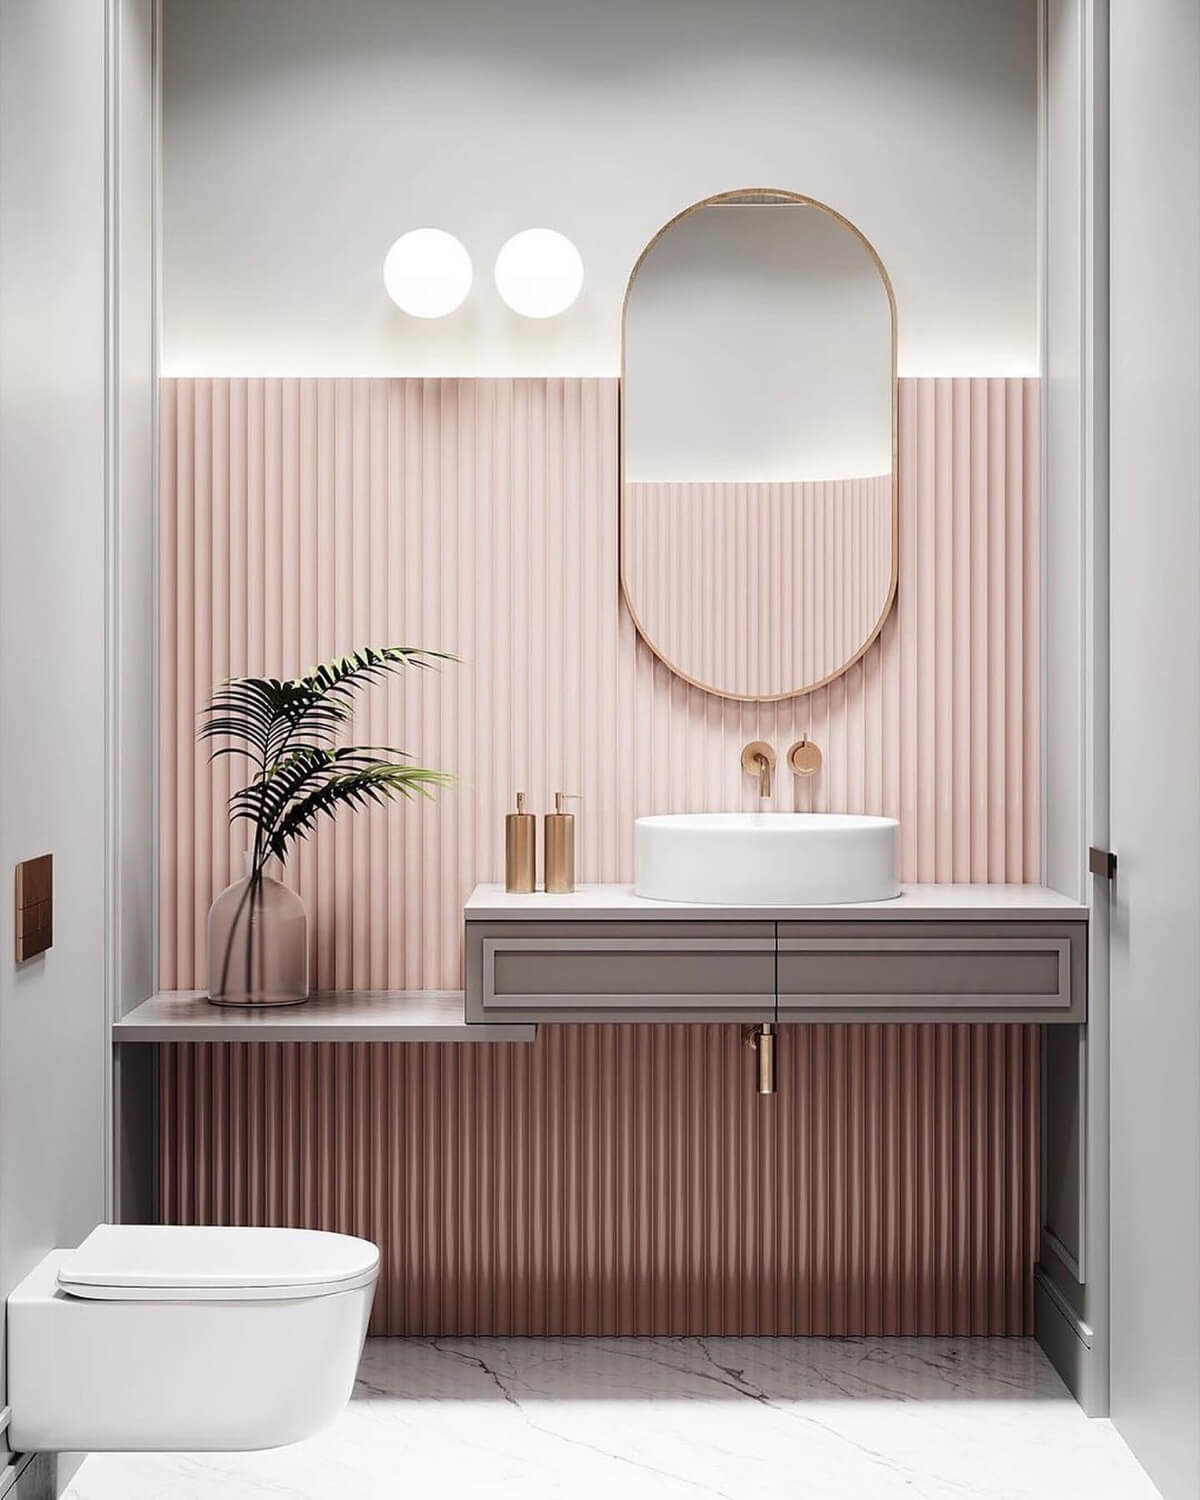 Cách thiết kế phòng tắm nhỏ 3m2 đẹp tối ưu diện tích 